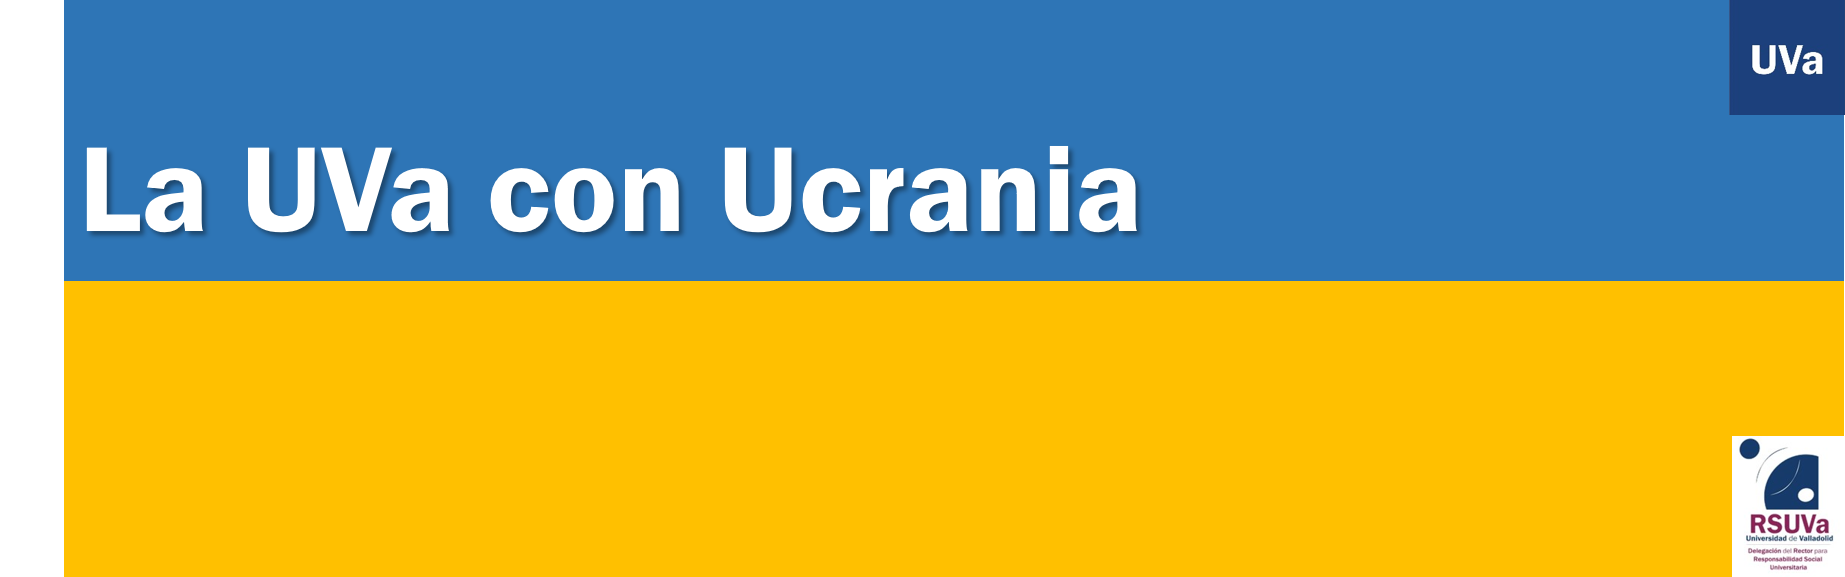 Actuaciones en la UVa con motivo de la crisis humanitaria en Ucrania